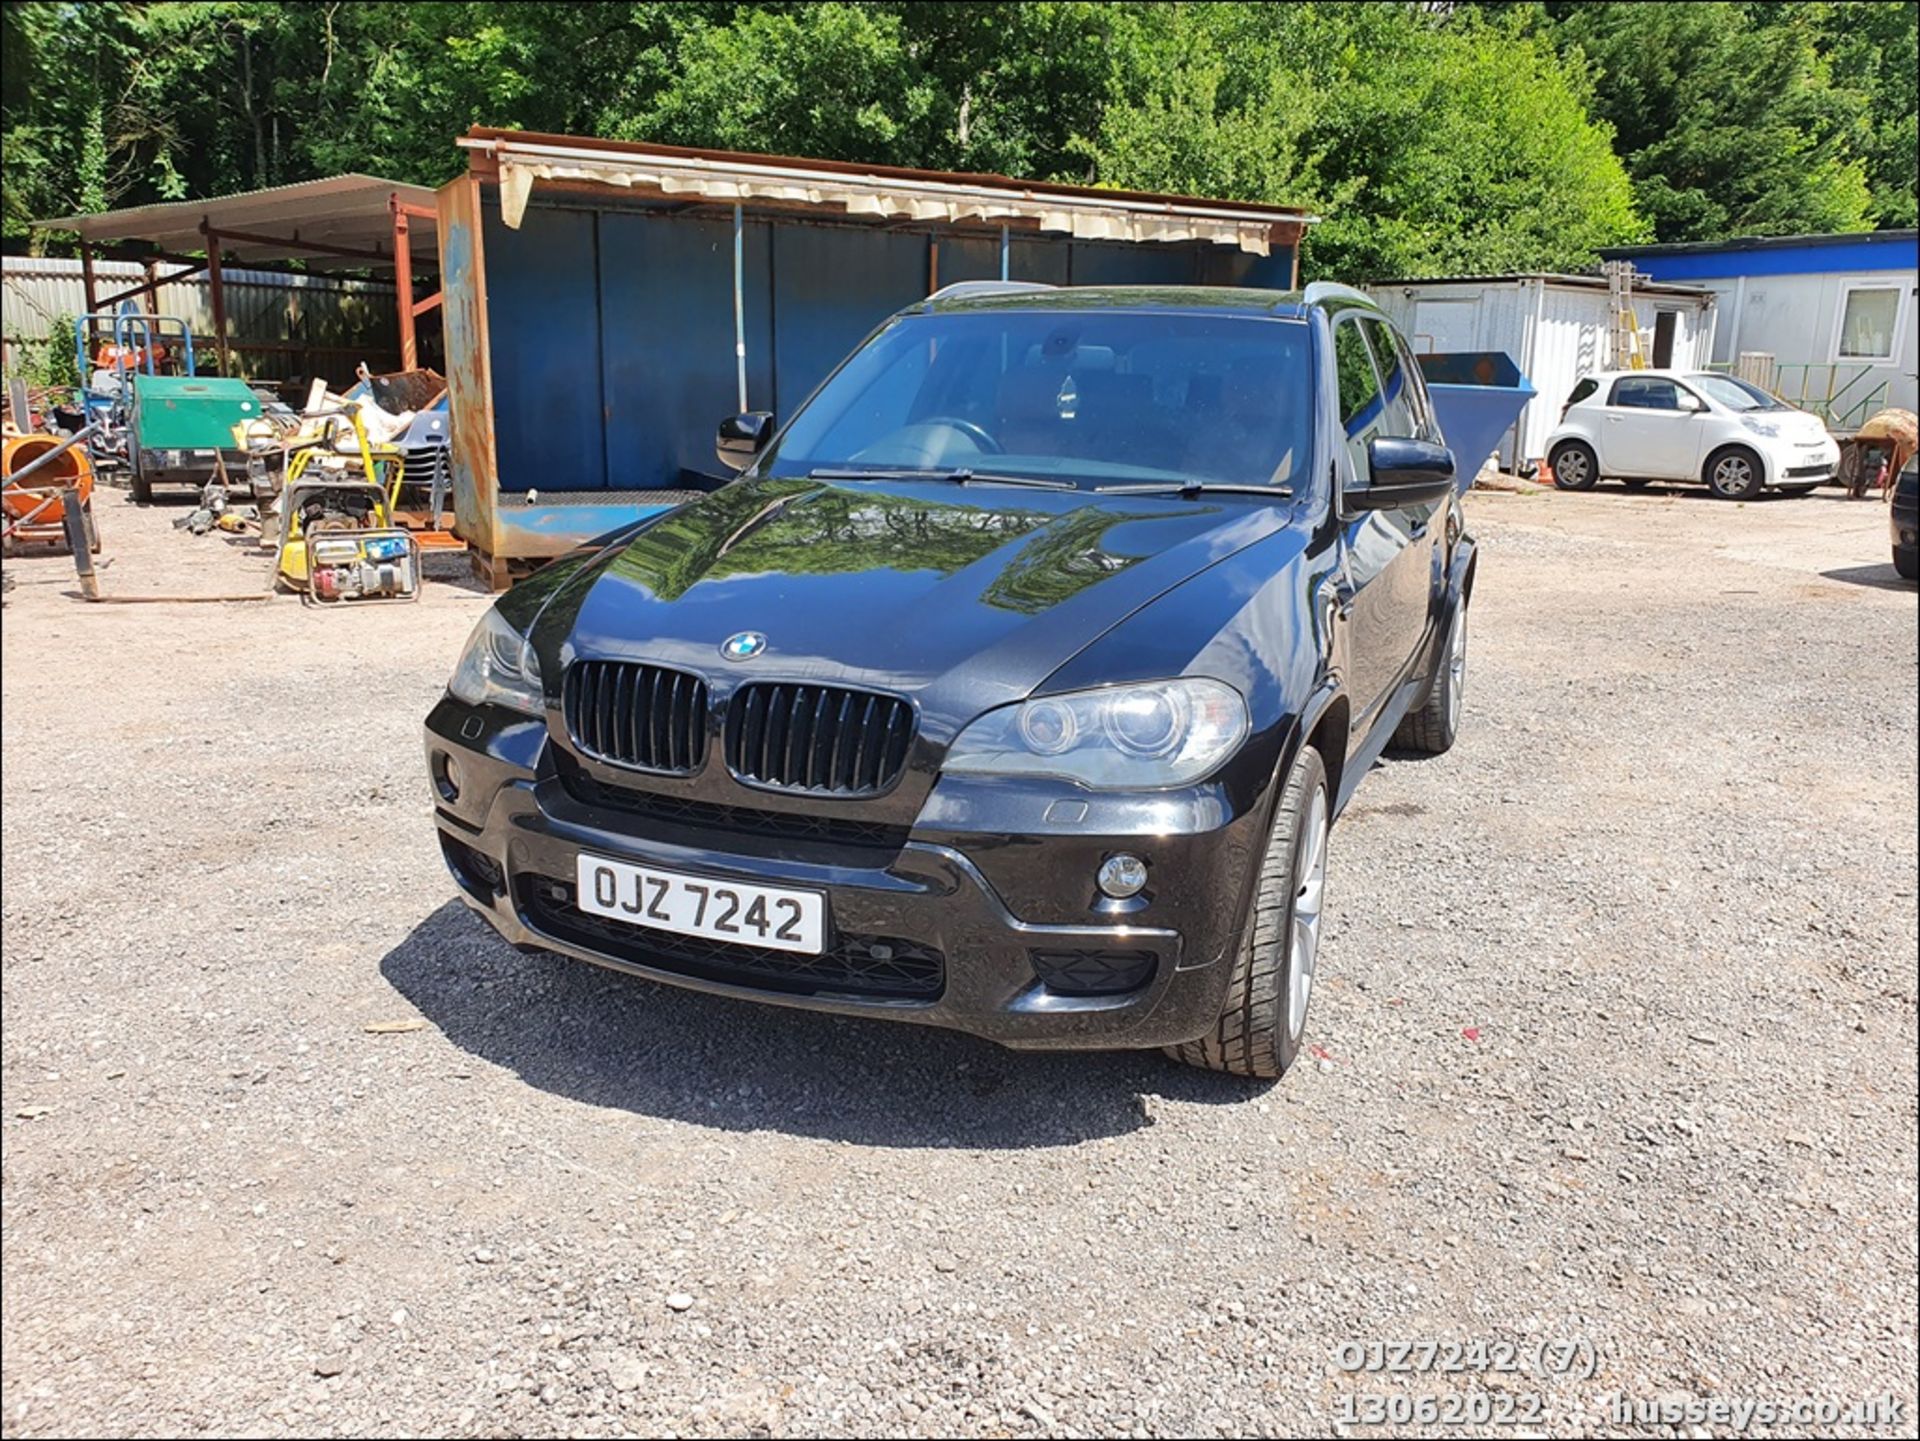 2009 BMW X5 3.0SD M SPORT 5S AUTO - 2993cc 5dr Estate (Black, 140k) - Image 10 of 42